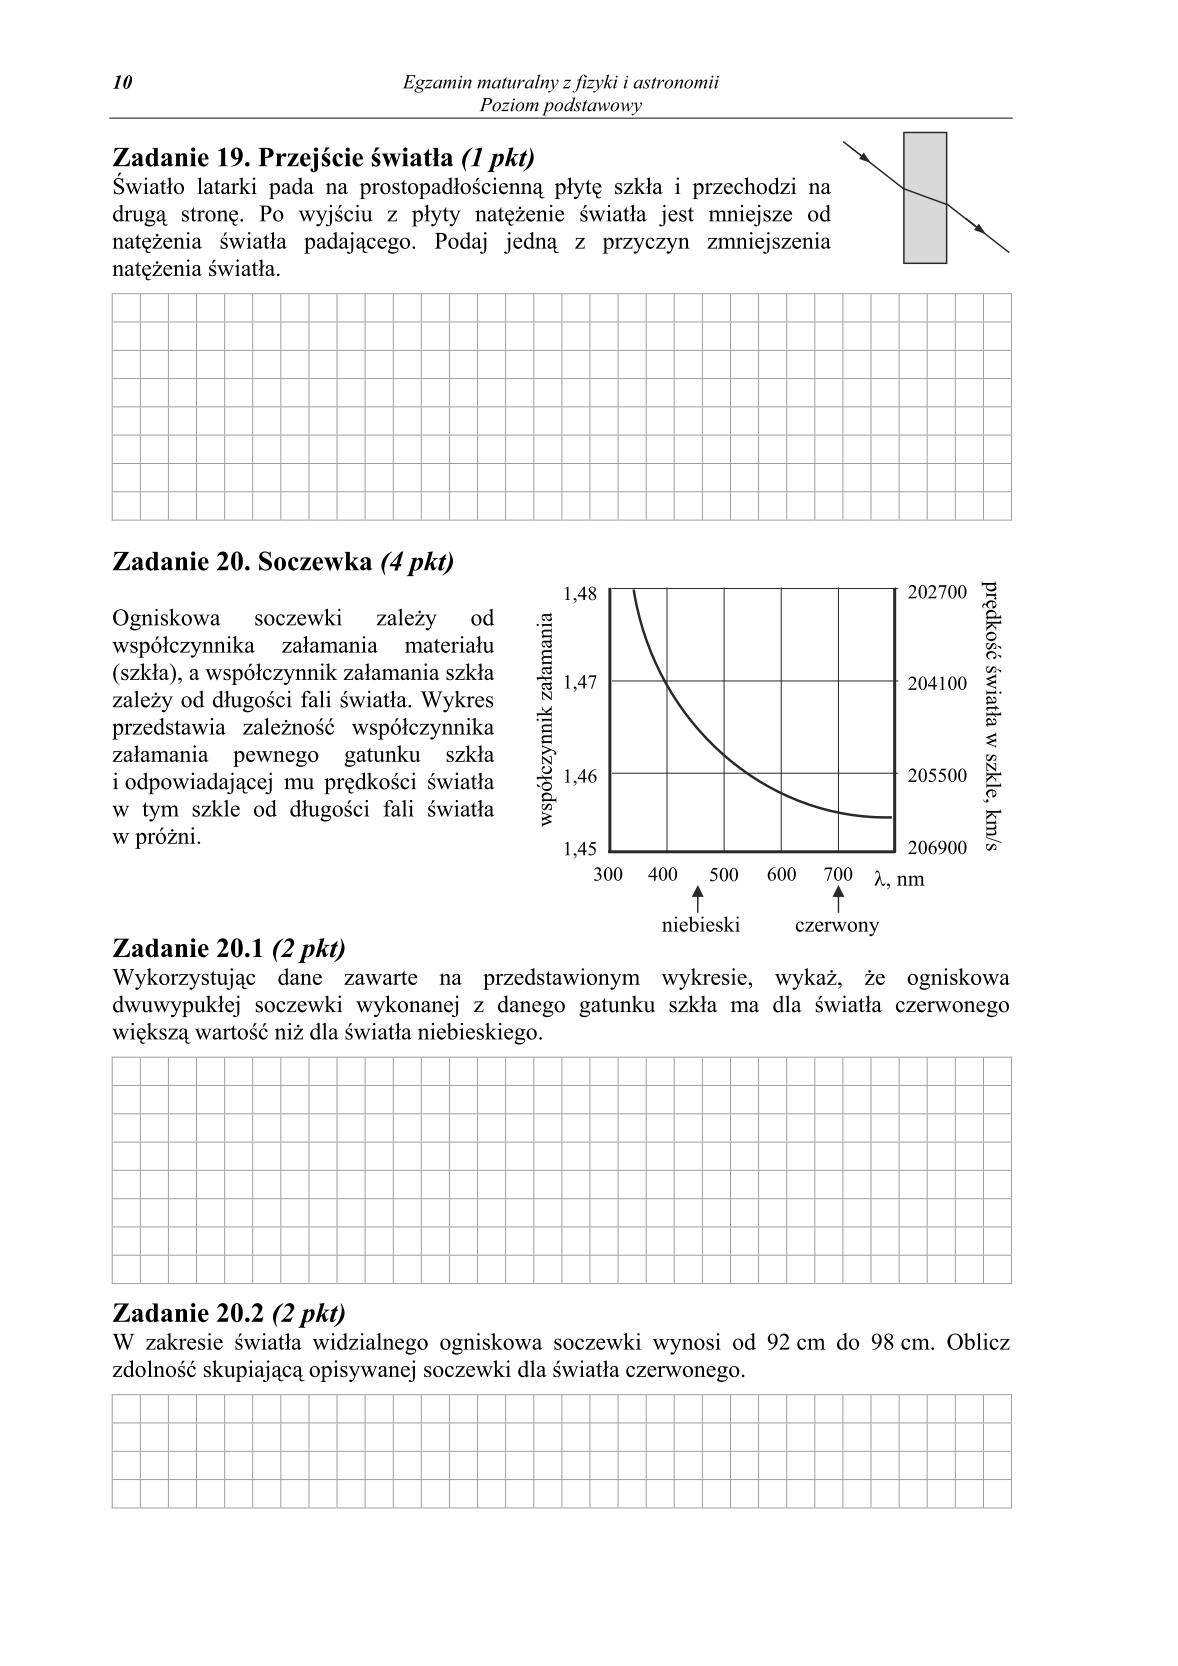 pytania-fizyka-i-astronomia-poziom-podstawowy-matura-2014-str.10